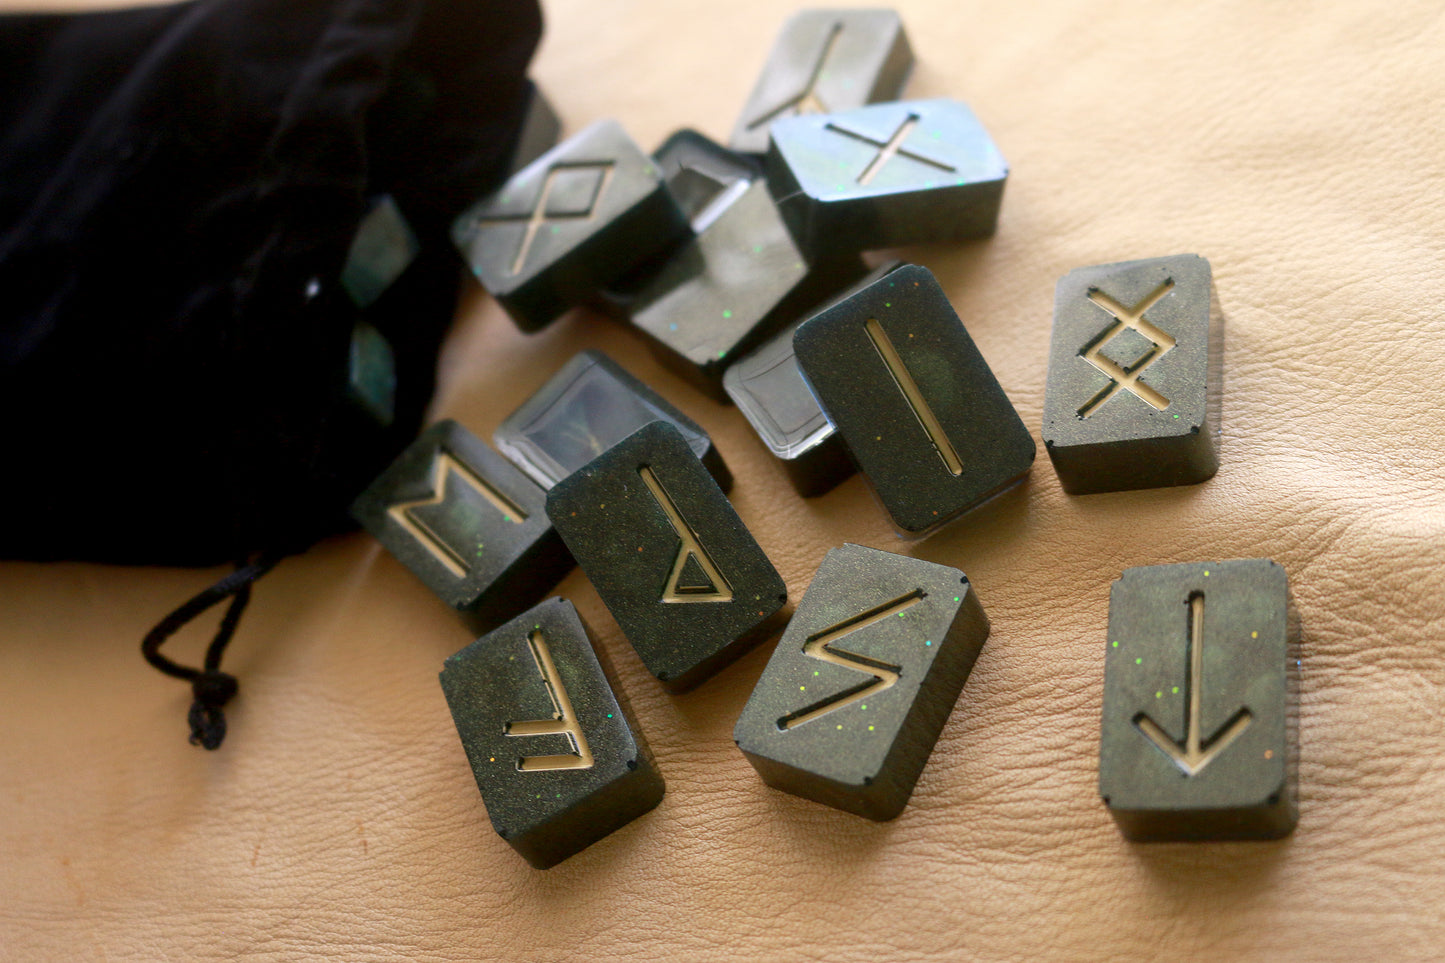 Dark Forest Elder Futhark Rune Set